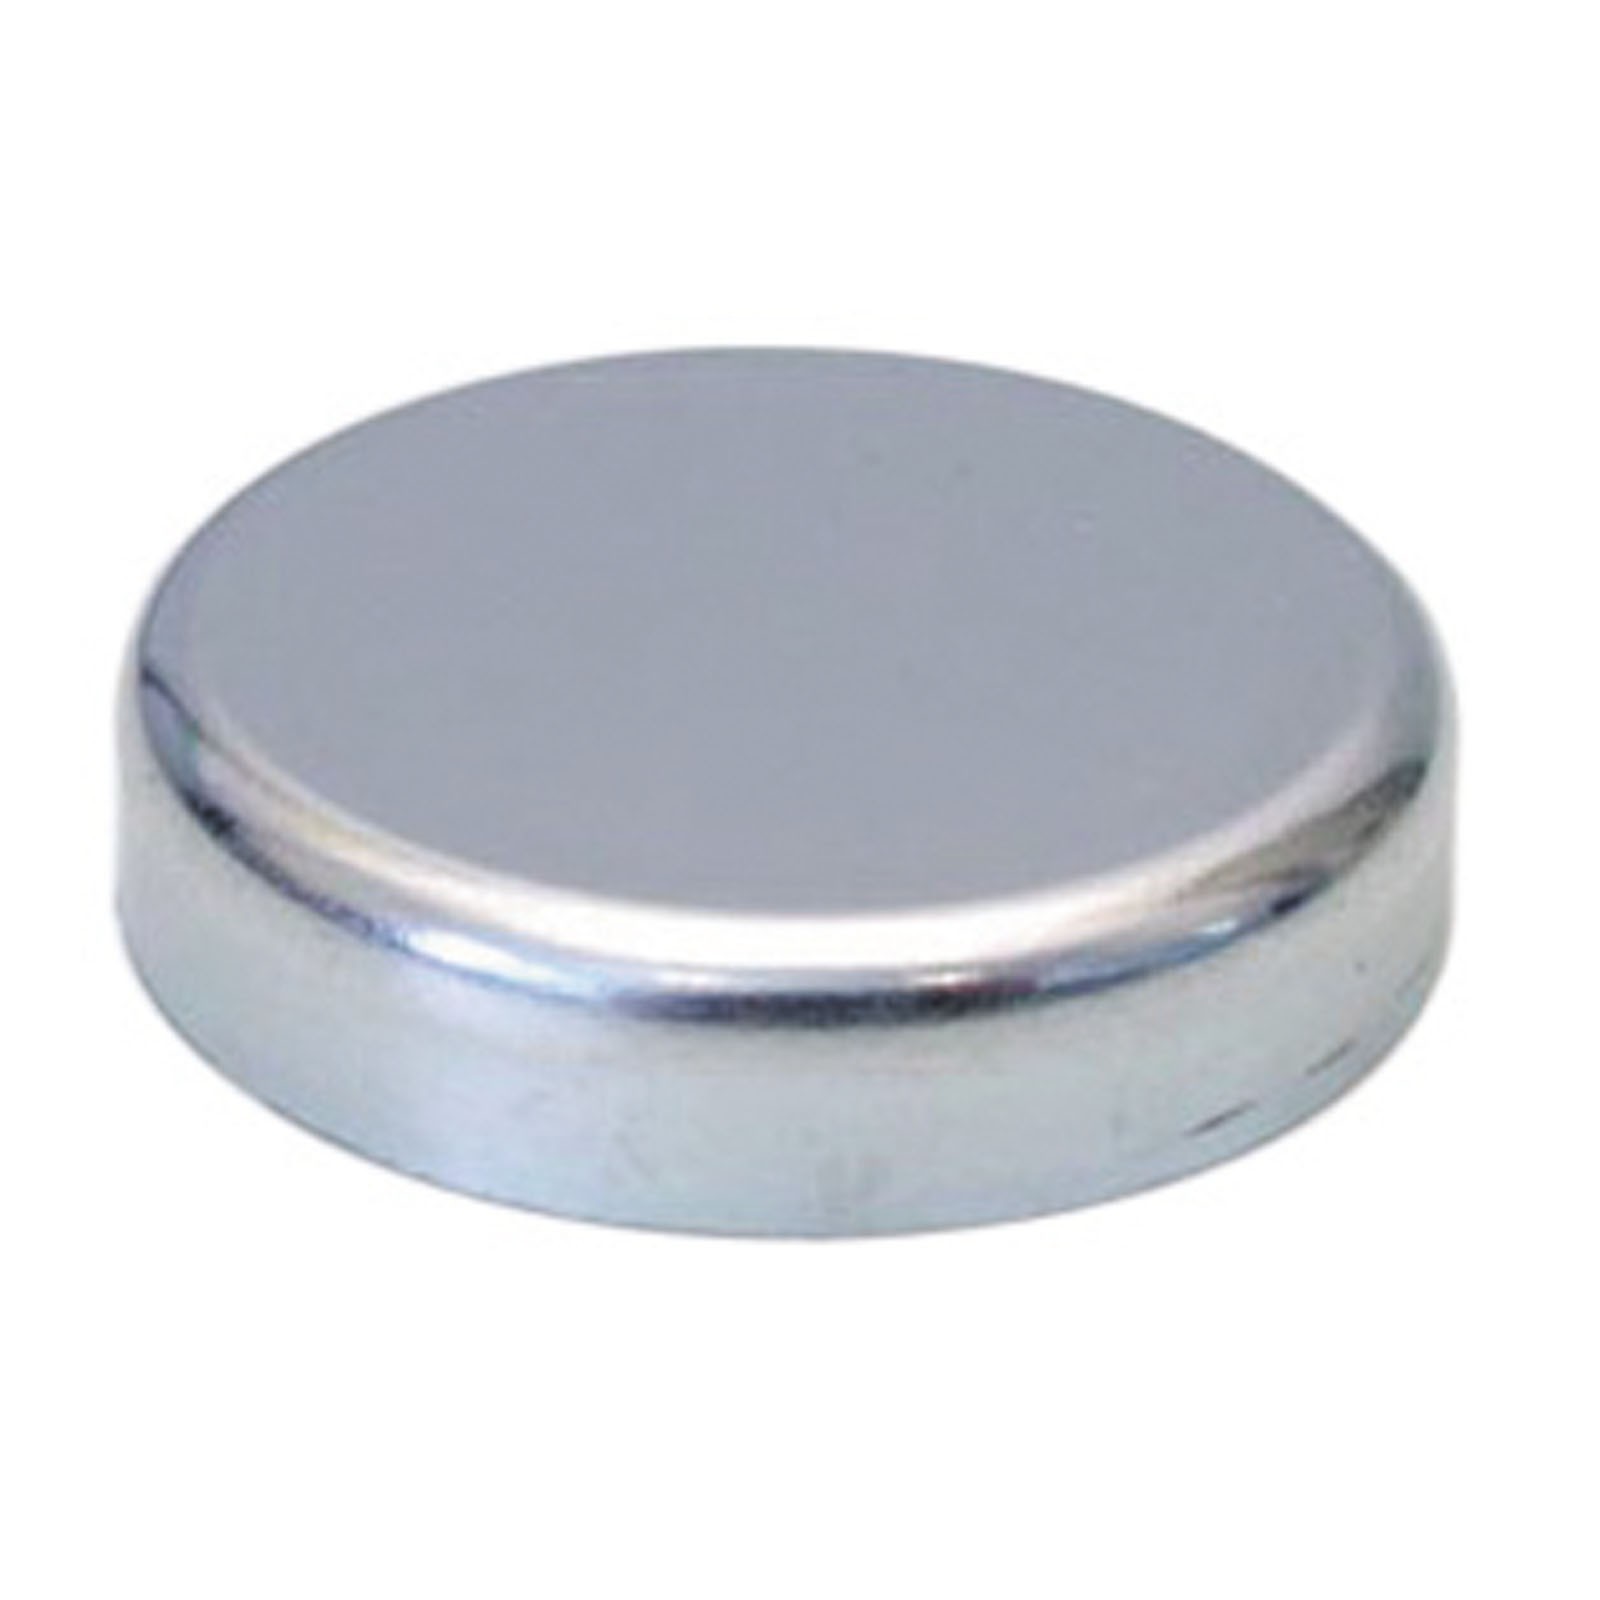 Flachgreifer Magnet Neodym Magnetfuß Oxit Hartferrit div Größen bis 125mm 1300 N Größe:20.0 mm von Rimag